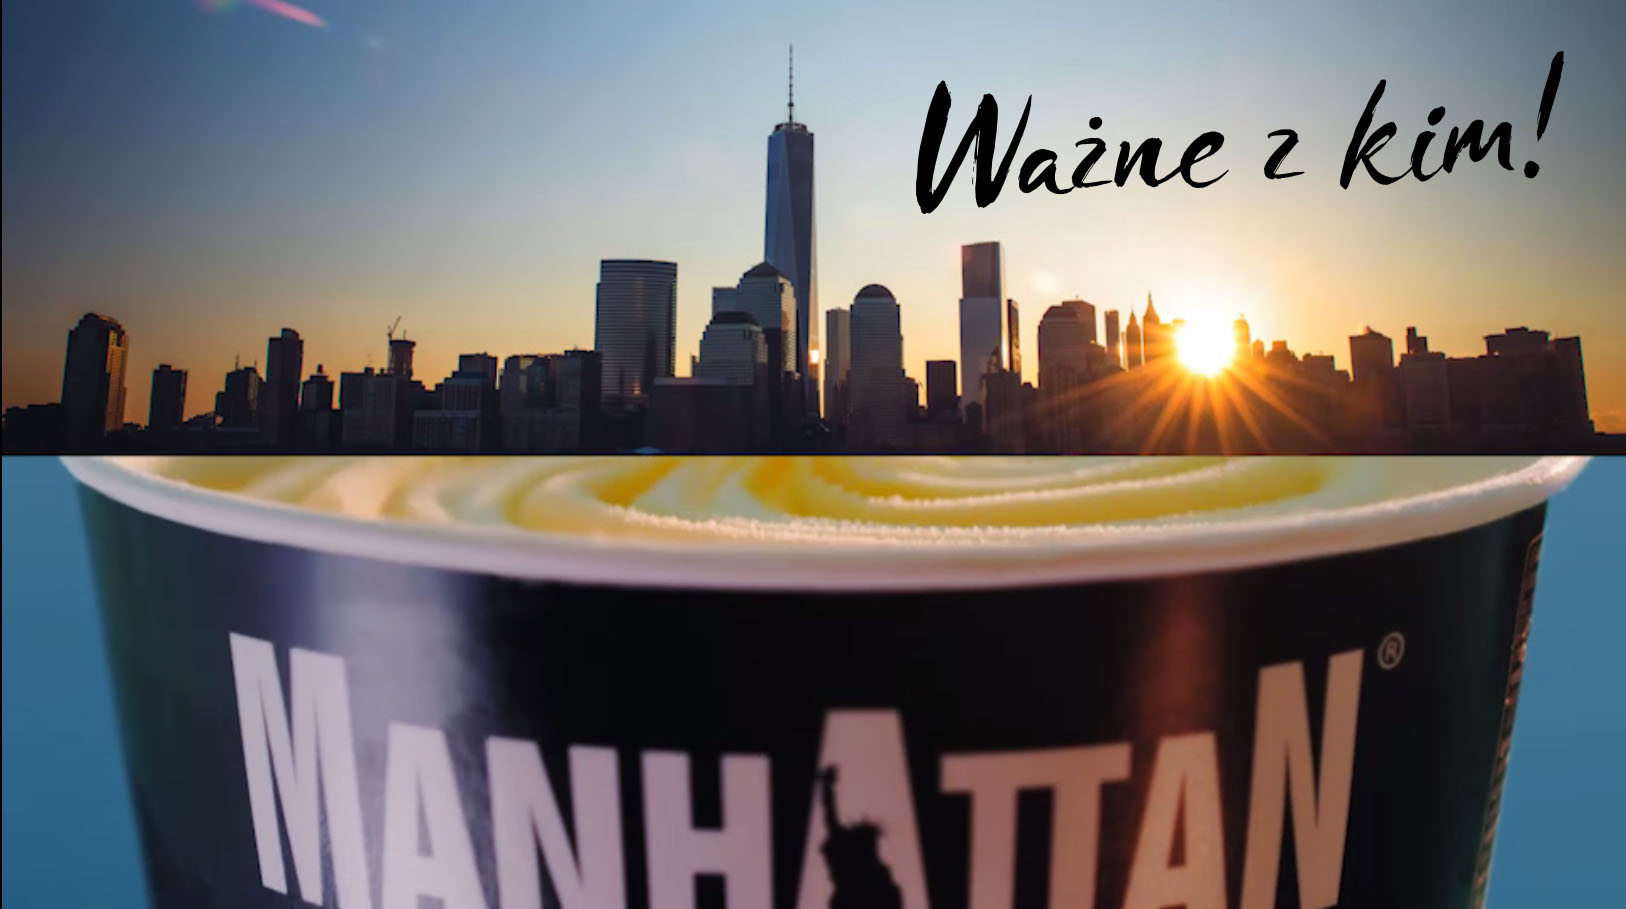 Kampania lodów Manhattan “Ważne z kim!”